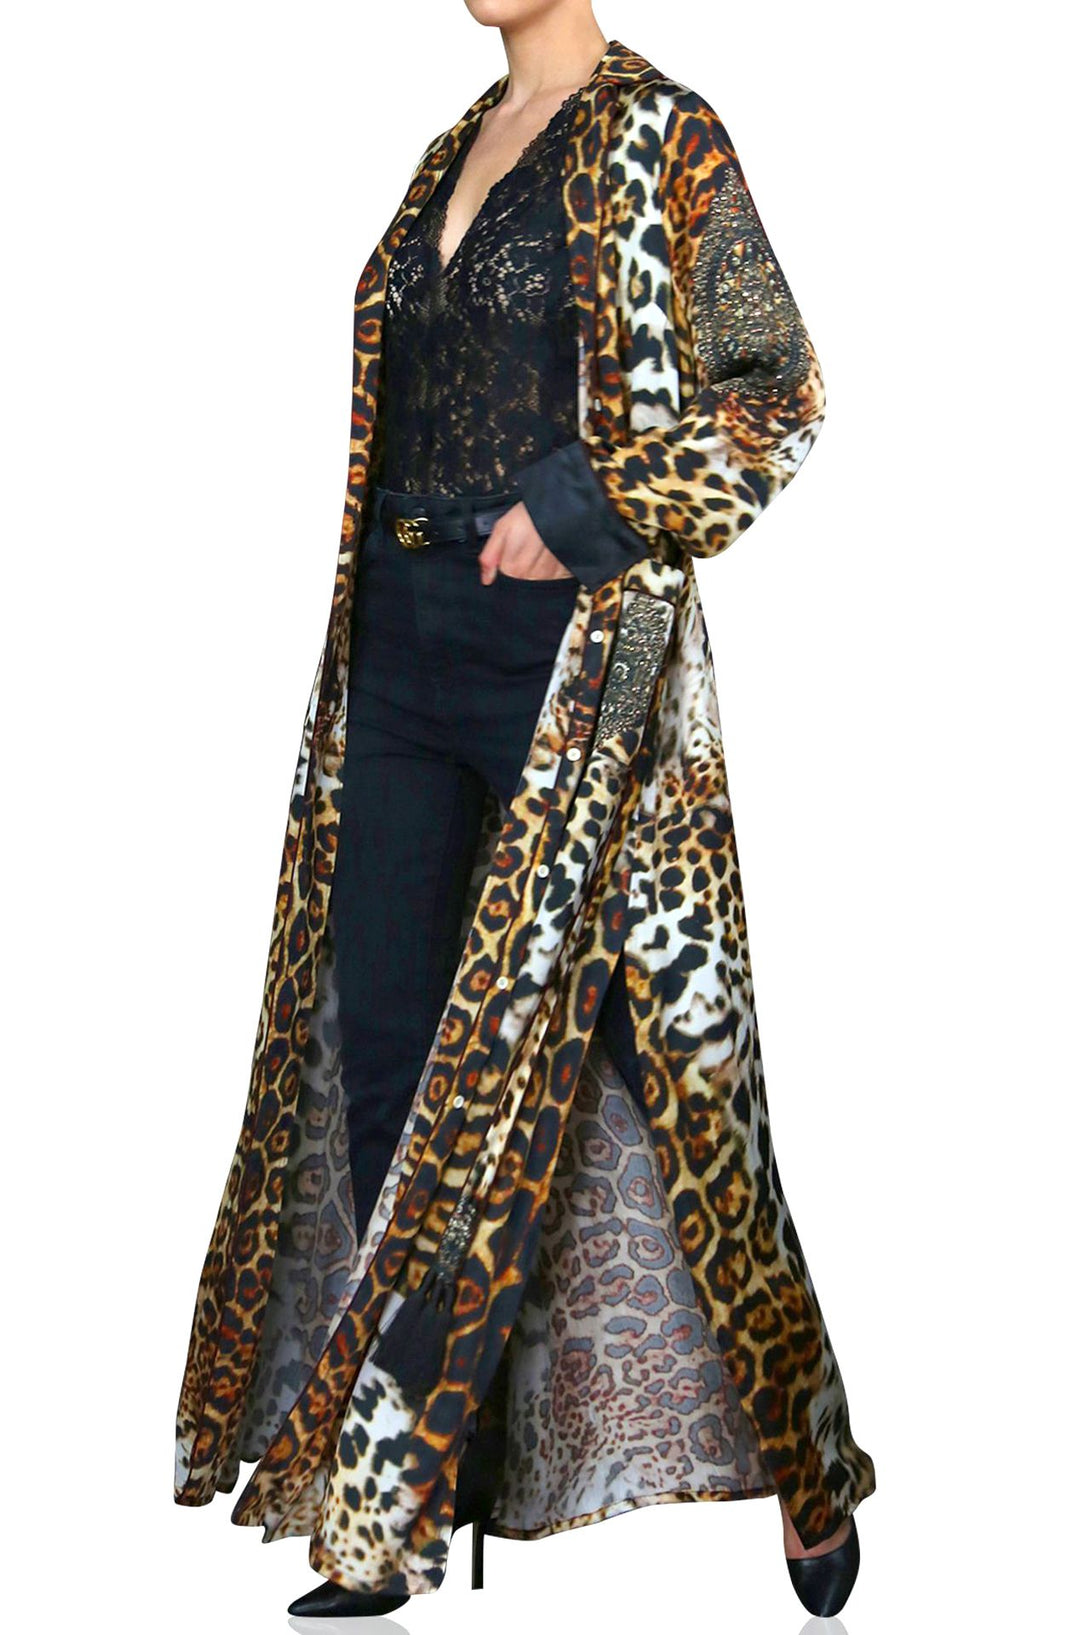 "womens leopard robe" "Shahida Parides" "kimono silk robes for women" "womens long kimono robe" "silk kimono womens" "long kimono silk robe"